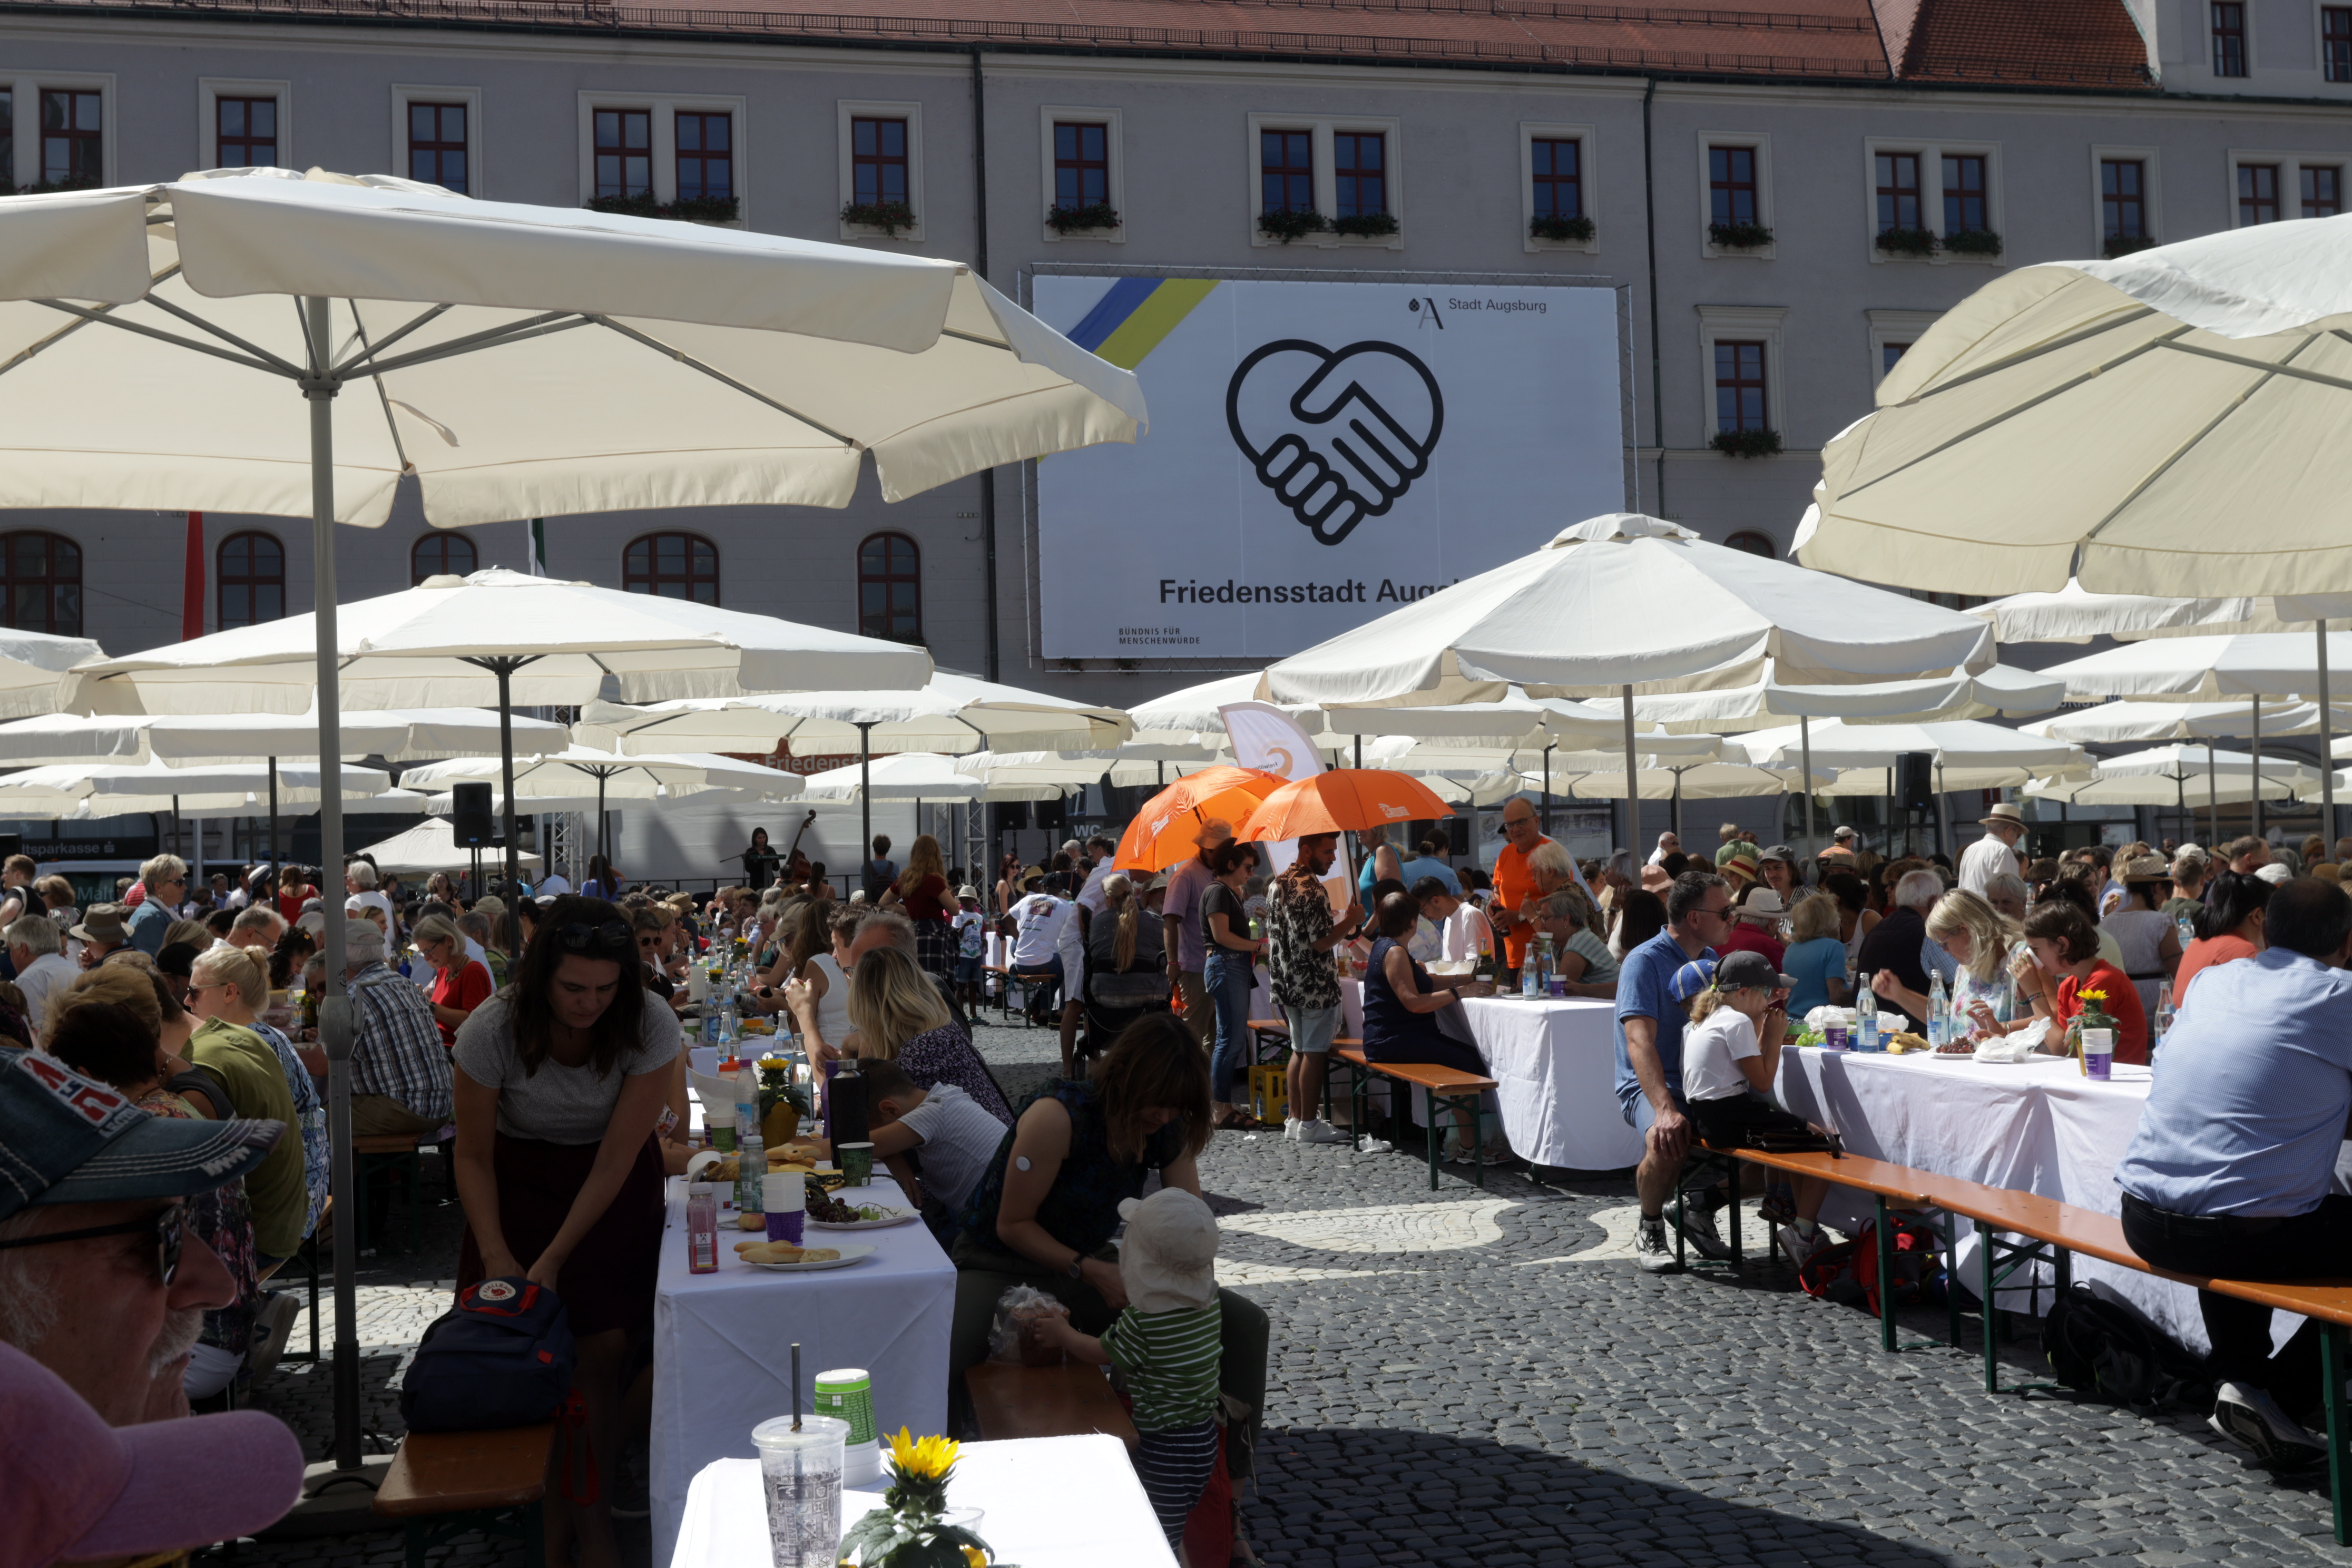 Aufgespannte Sonneschirm beschatten Bierbänke, an denen Menschen sitzen. Im Hintergrund ein Plakat "Friedensstadt Augsburg"